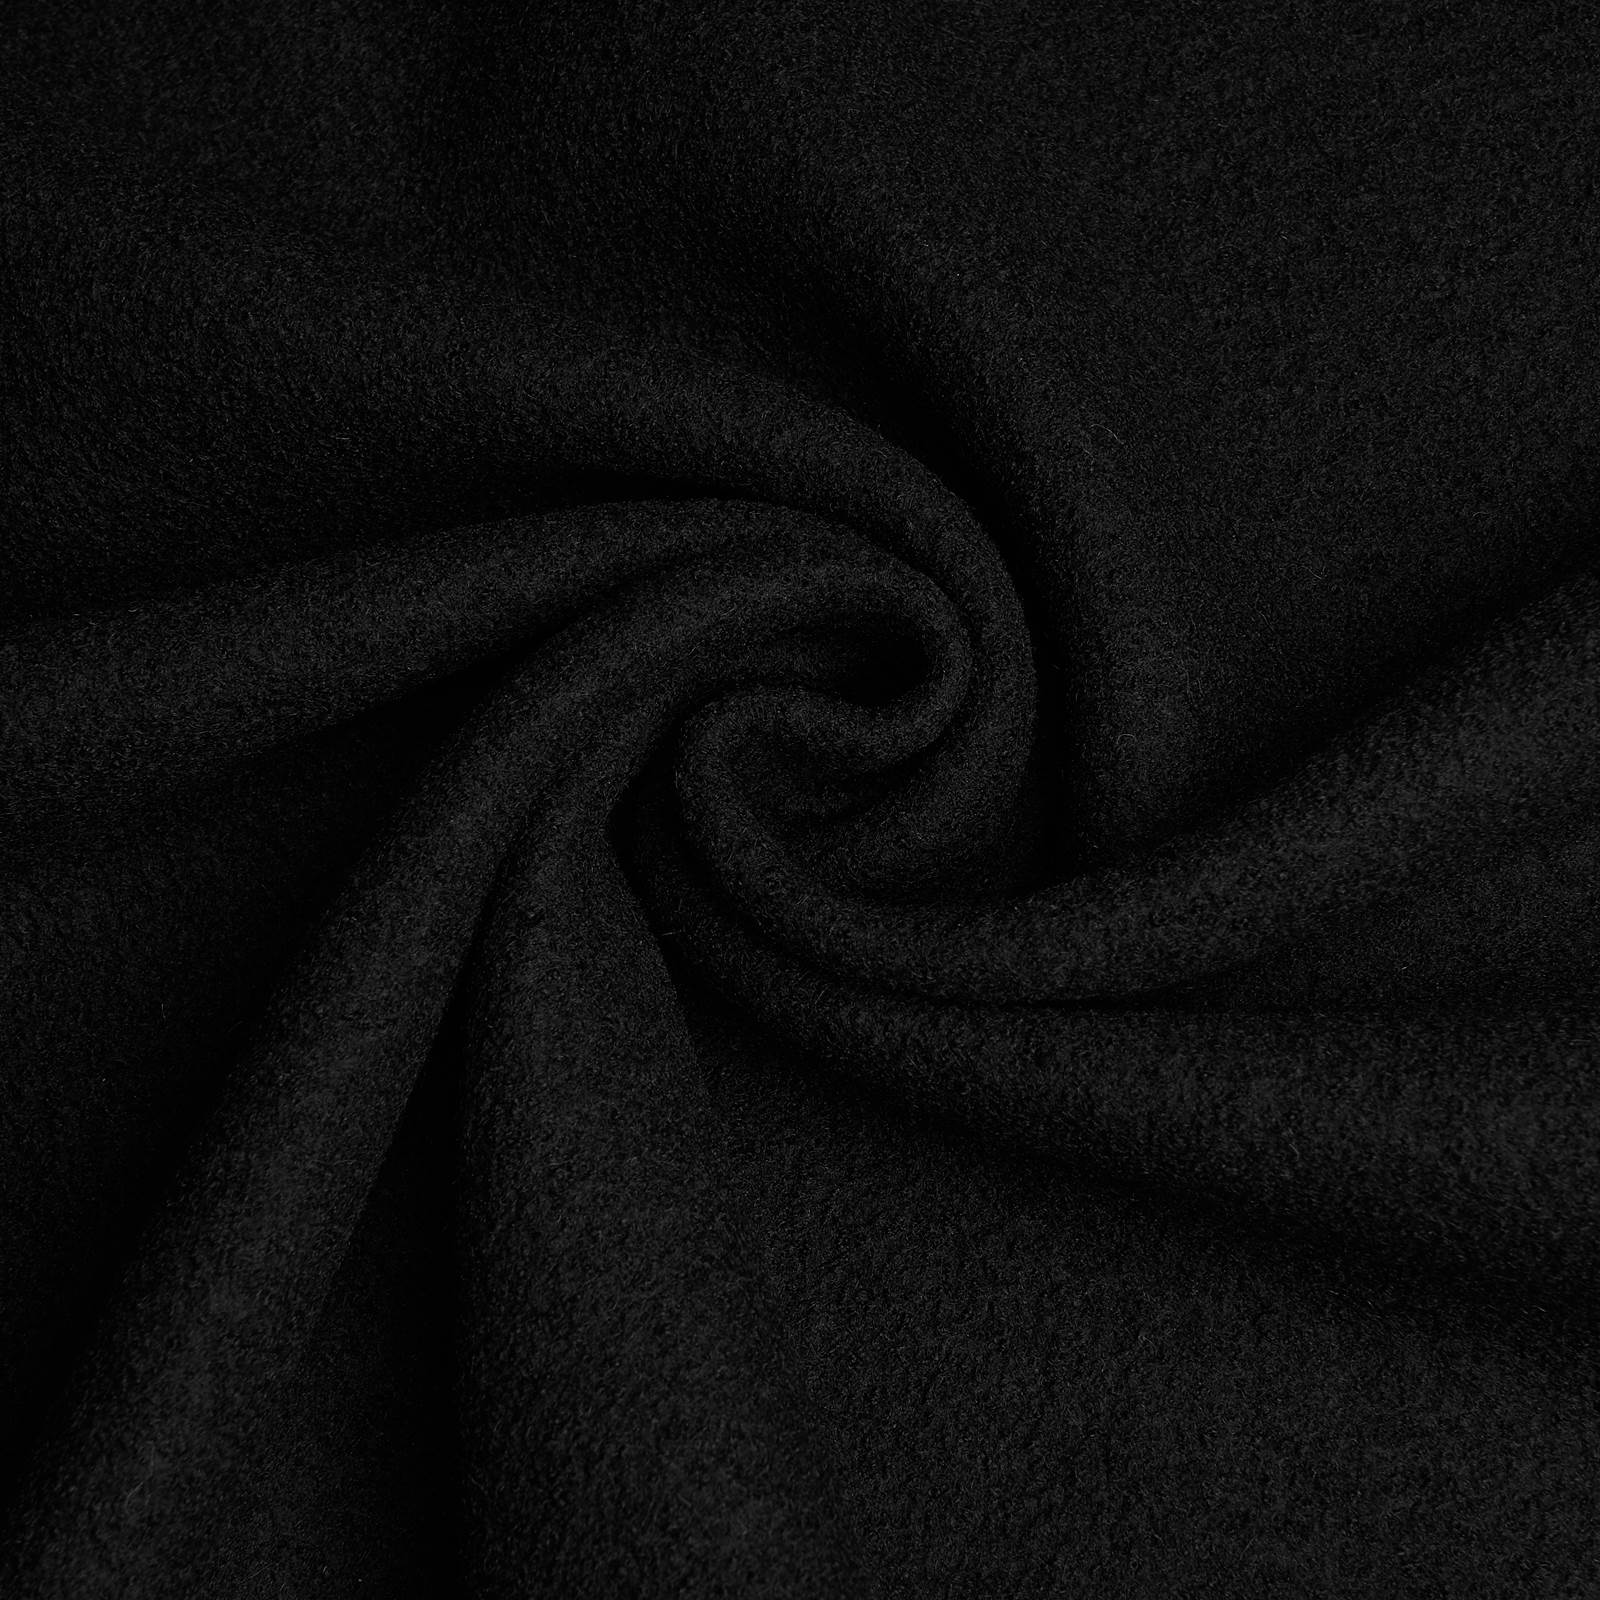 Fabian - boiled wool / loden fabric - 100% virgin wool (black)